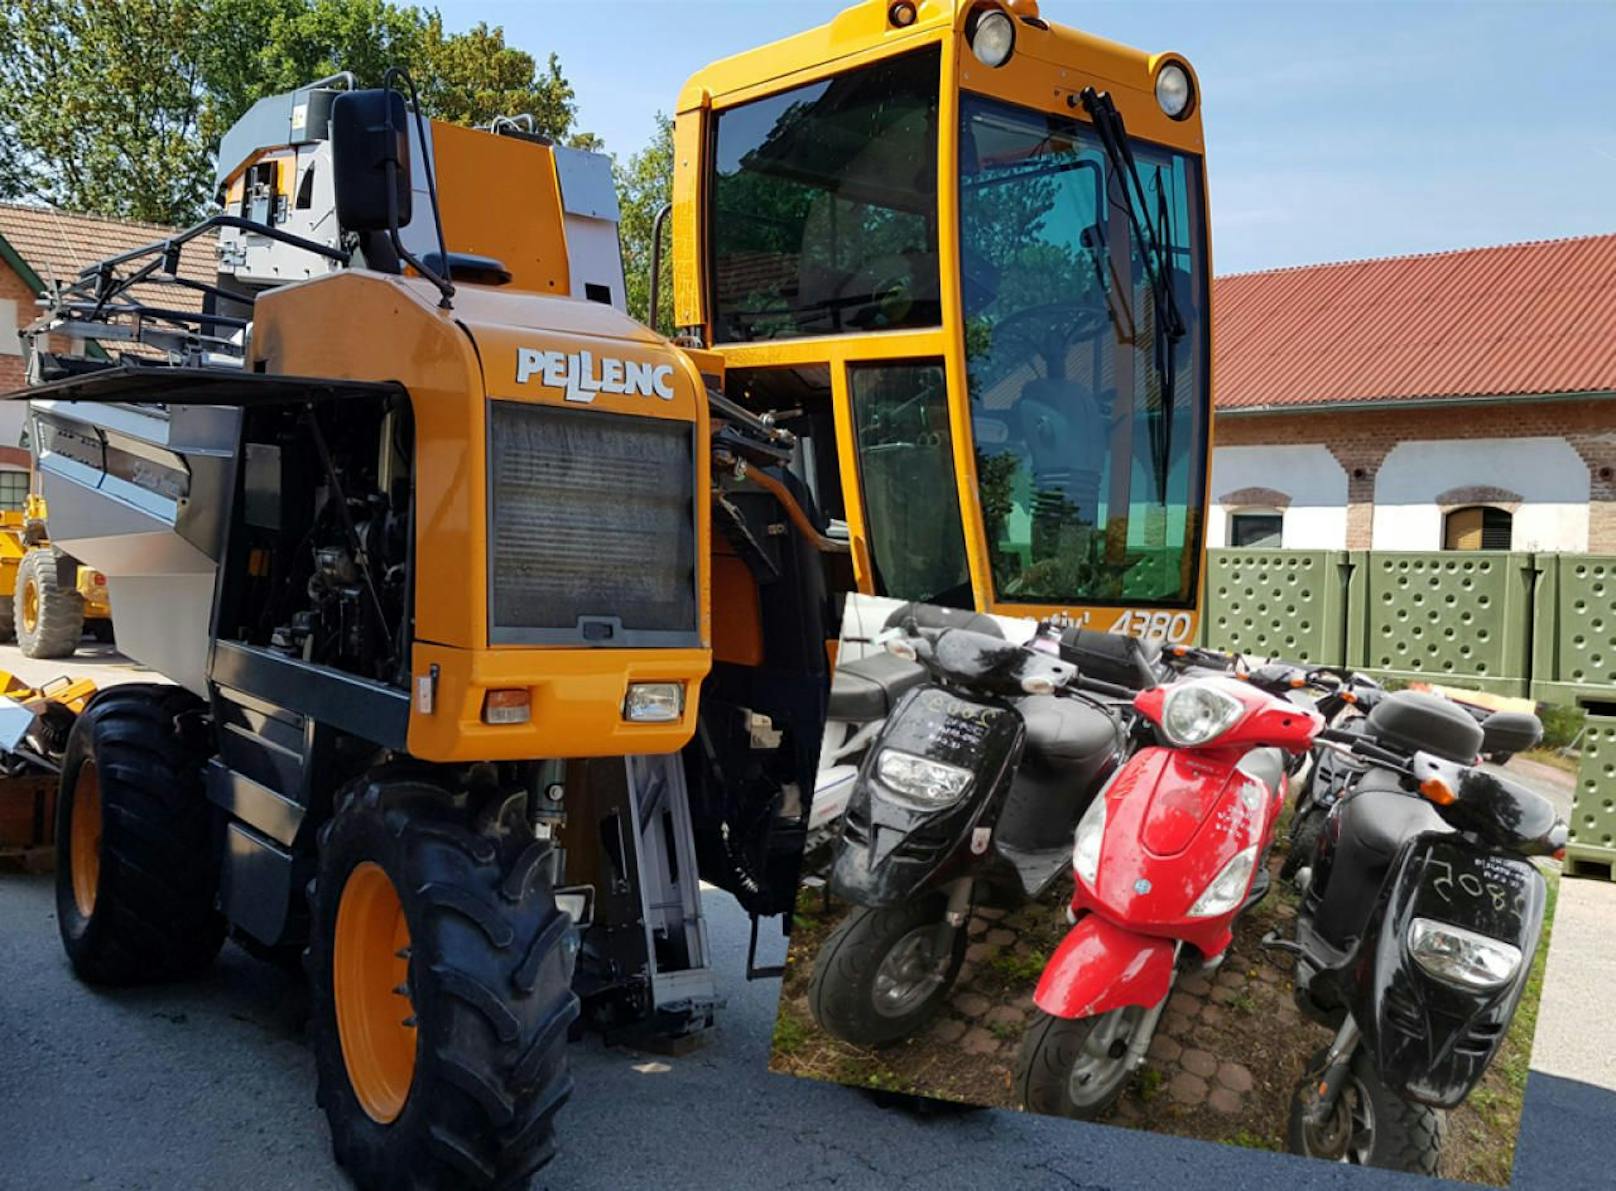 Traktor oder Roller, der Altwarenmarkt der MA 48 hat so einiges zu bieten. 